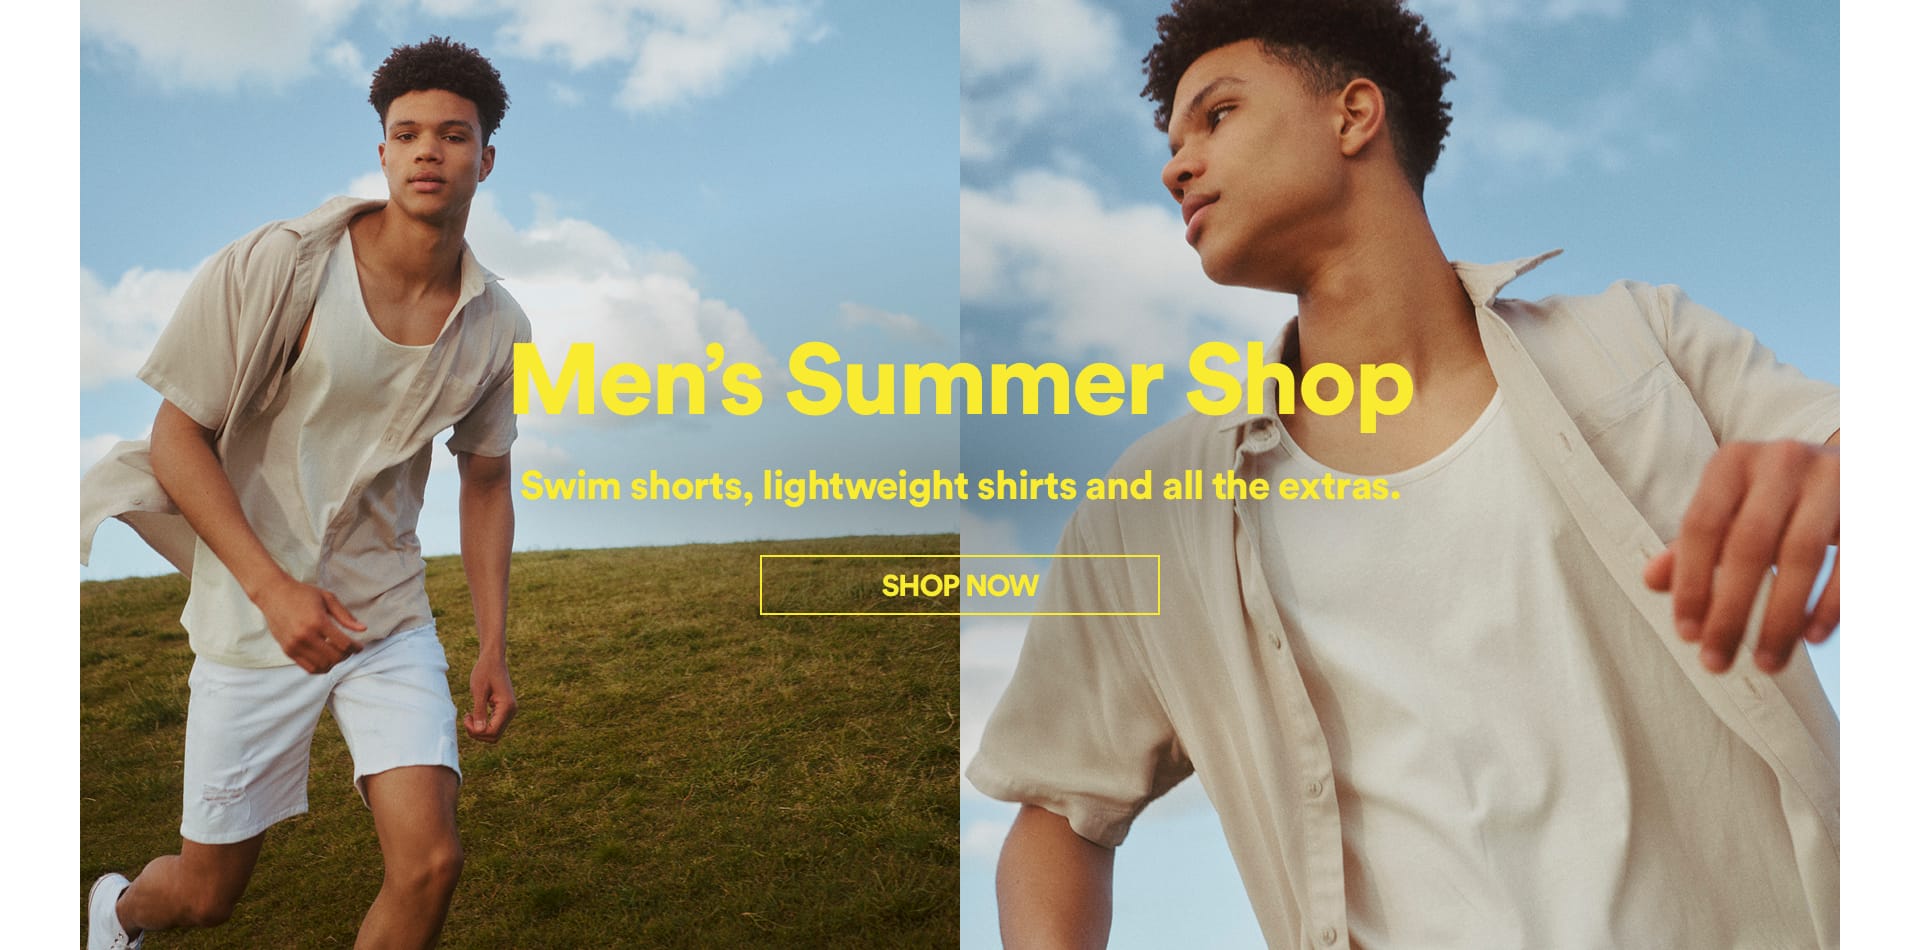 Cotton On Men's Summer Shop. Click to shop.